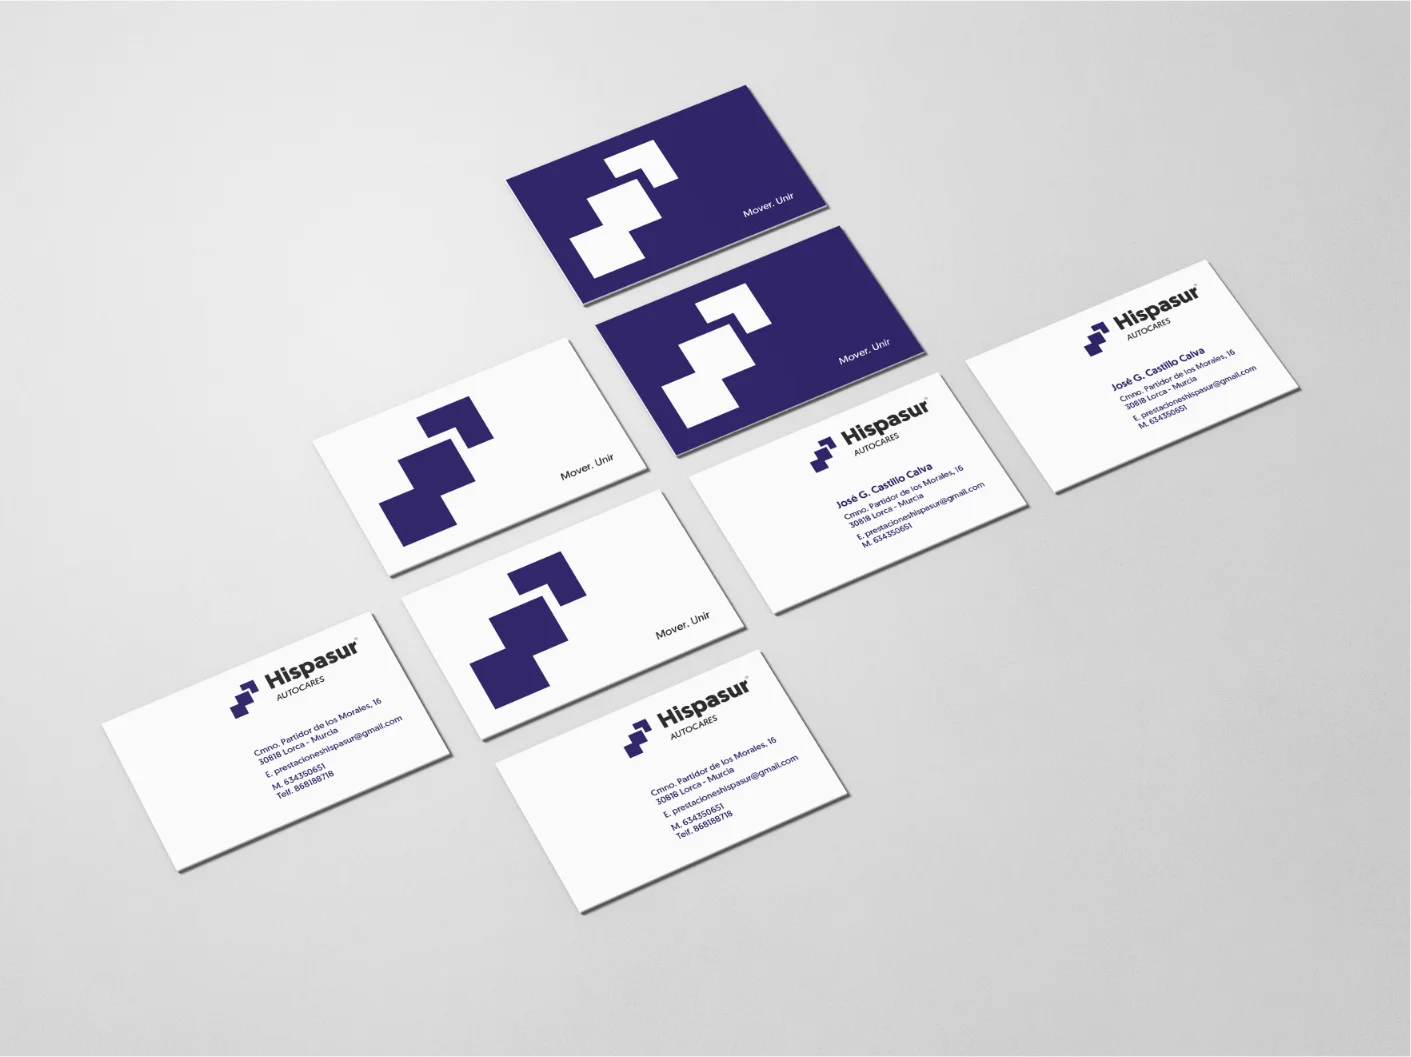 Tarjetas de visita de la marca hispasur, tanto la tarjeta de empresa como el modelo de tarjeta para personas